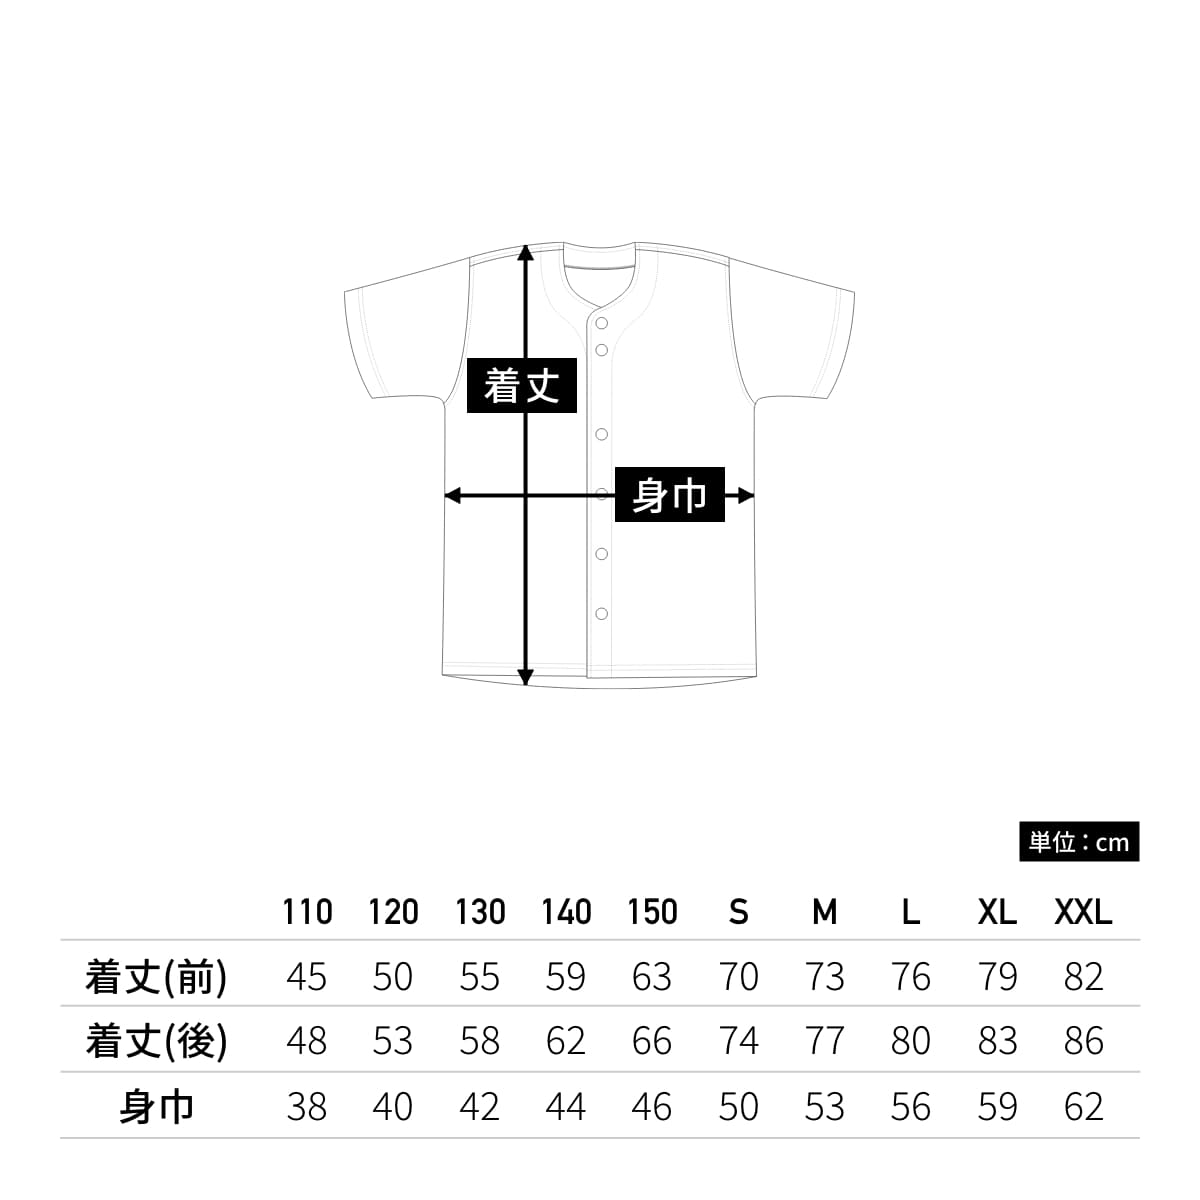 【送料無料】ベーシックベースボールシャツ | ユニフォーム | 1枚 | P2700 | ネイビー